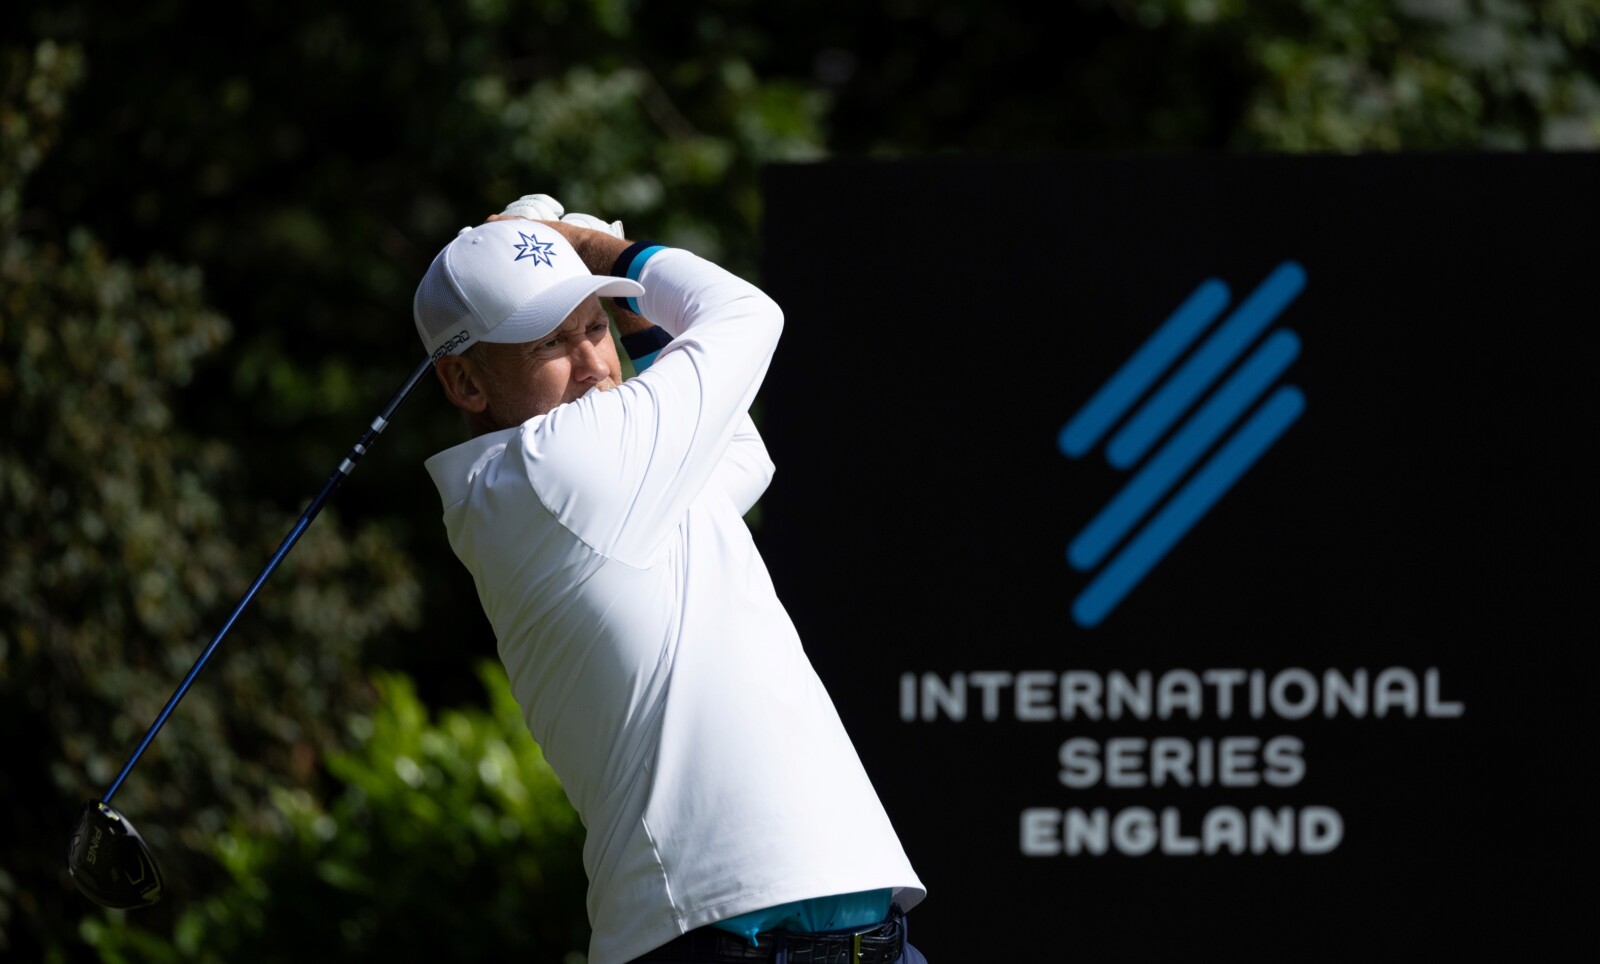  Poulter y McDowell entre las estrellas de LIV Golf inscritas para la Serie Internacional de Londres - Golf News |  Revista de golf
